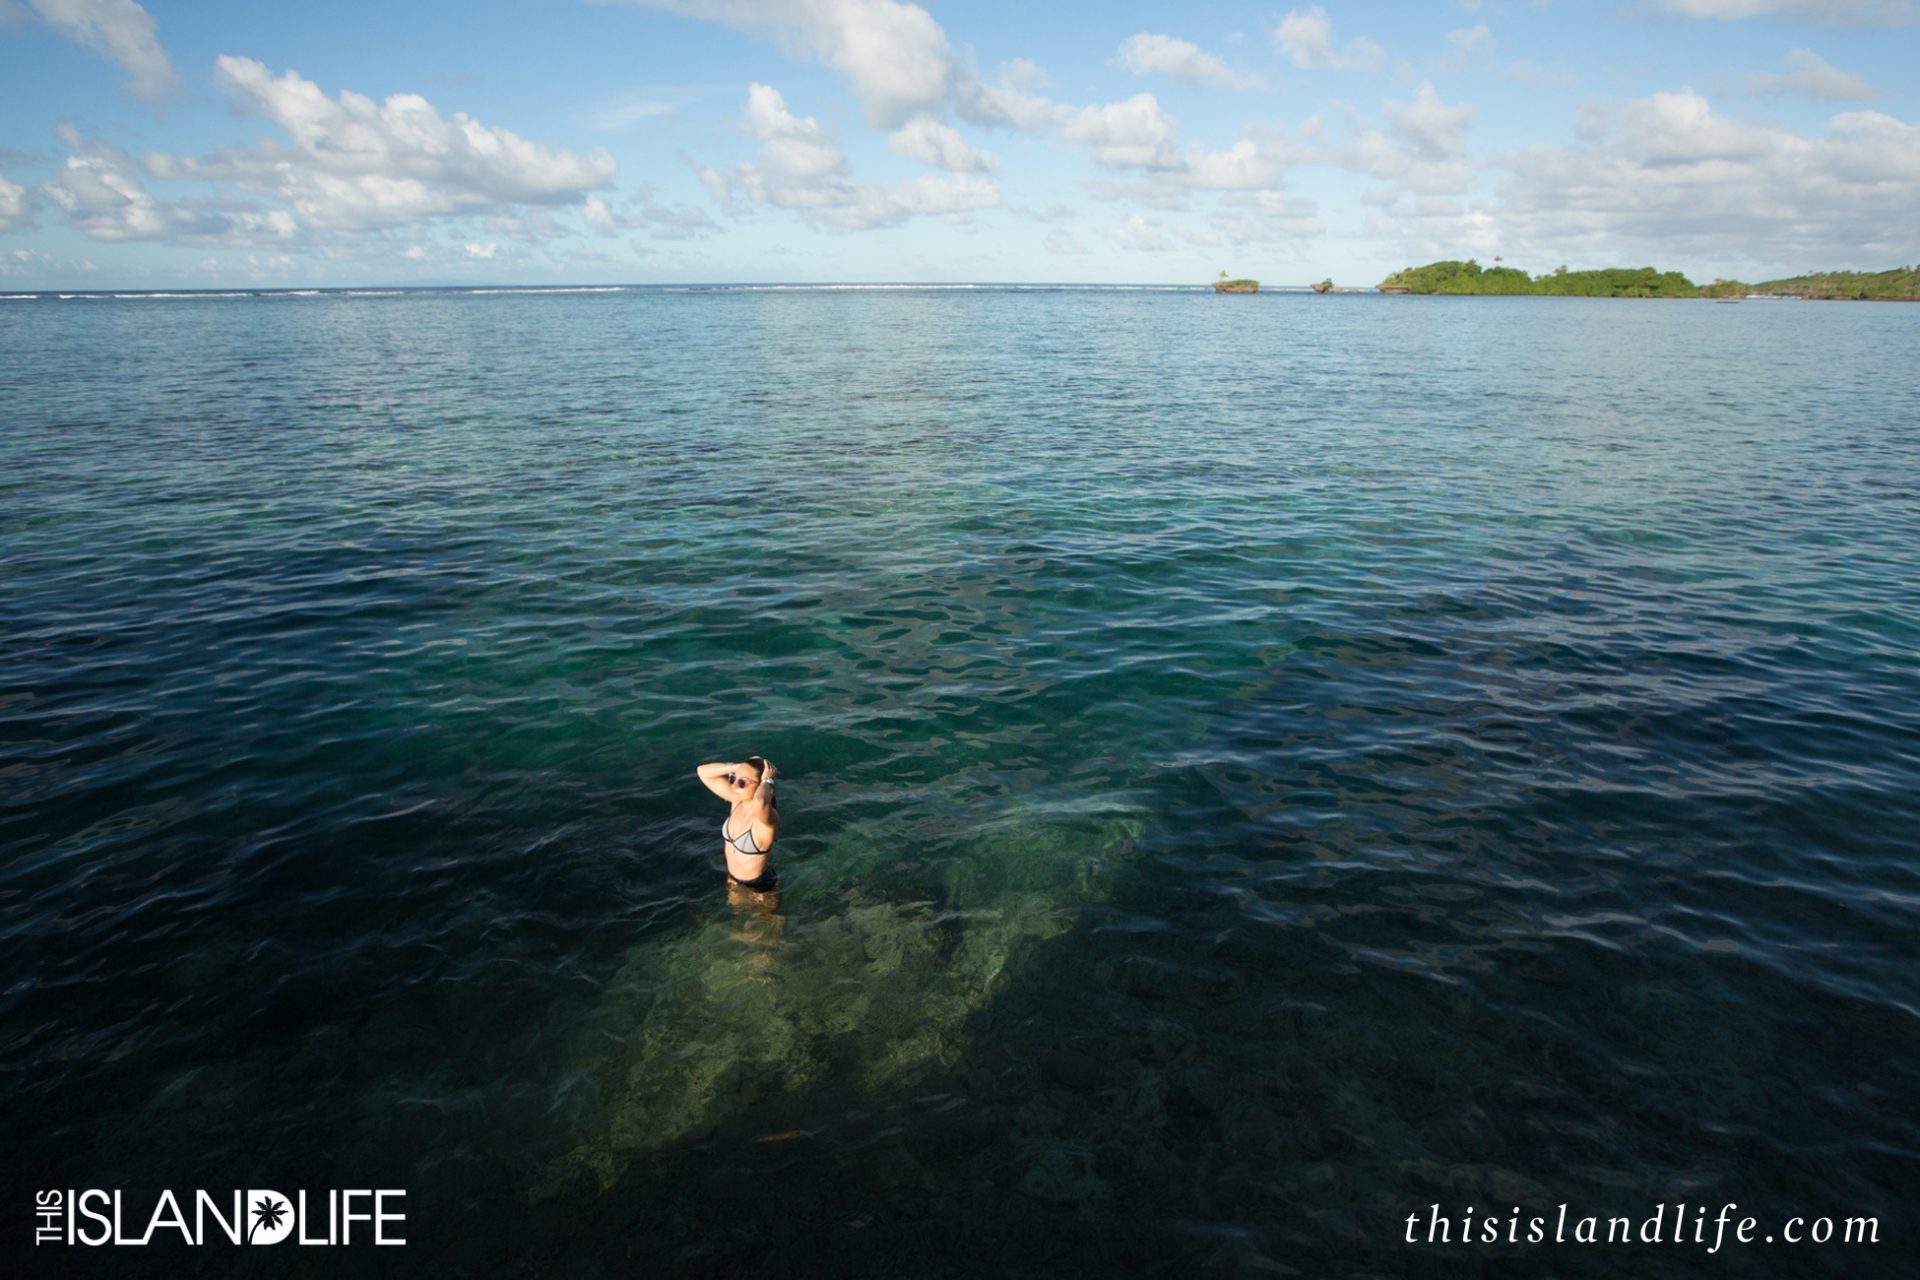 THIS ISLAND LIFE | On island time with Nixon in Fiji